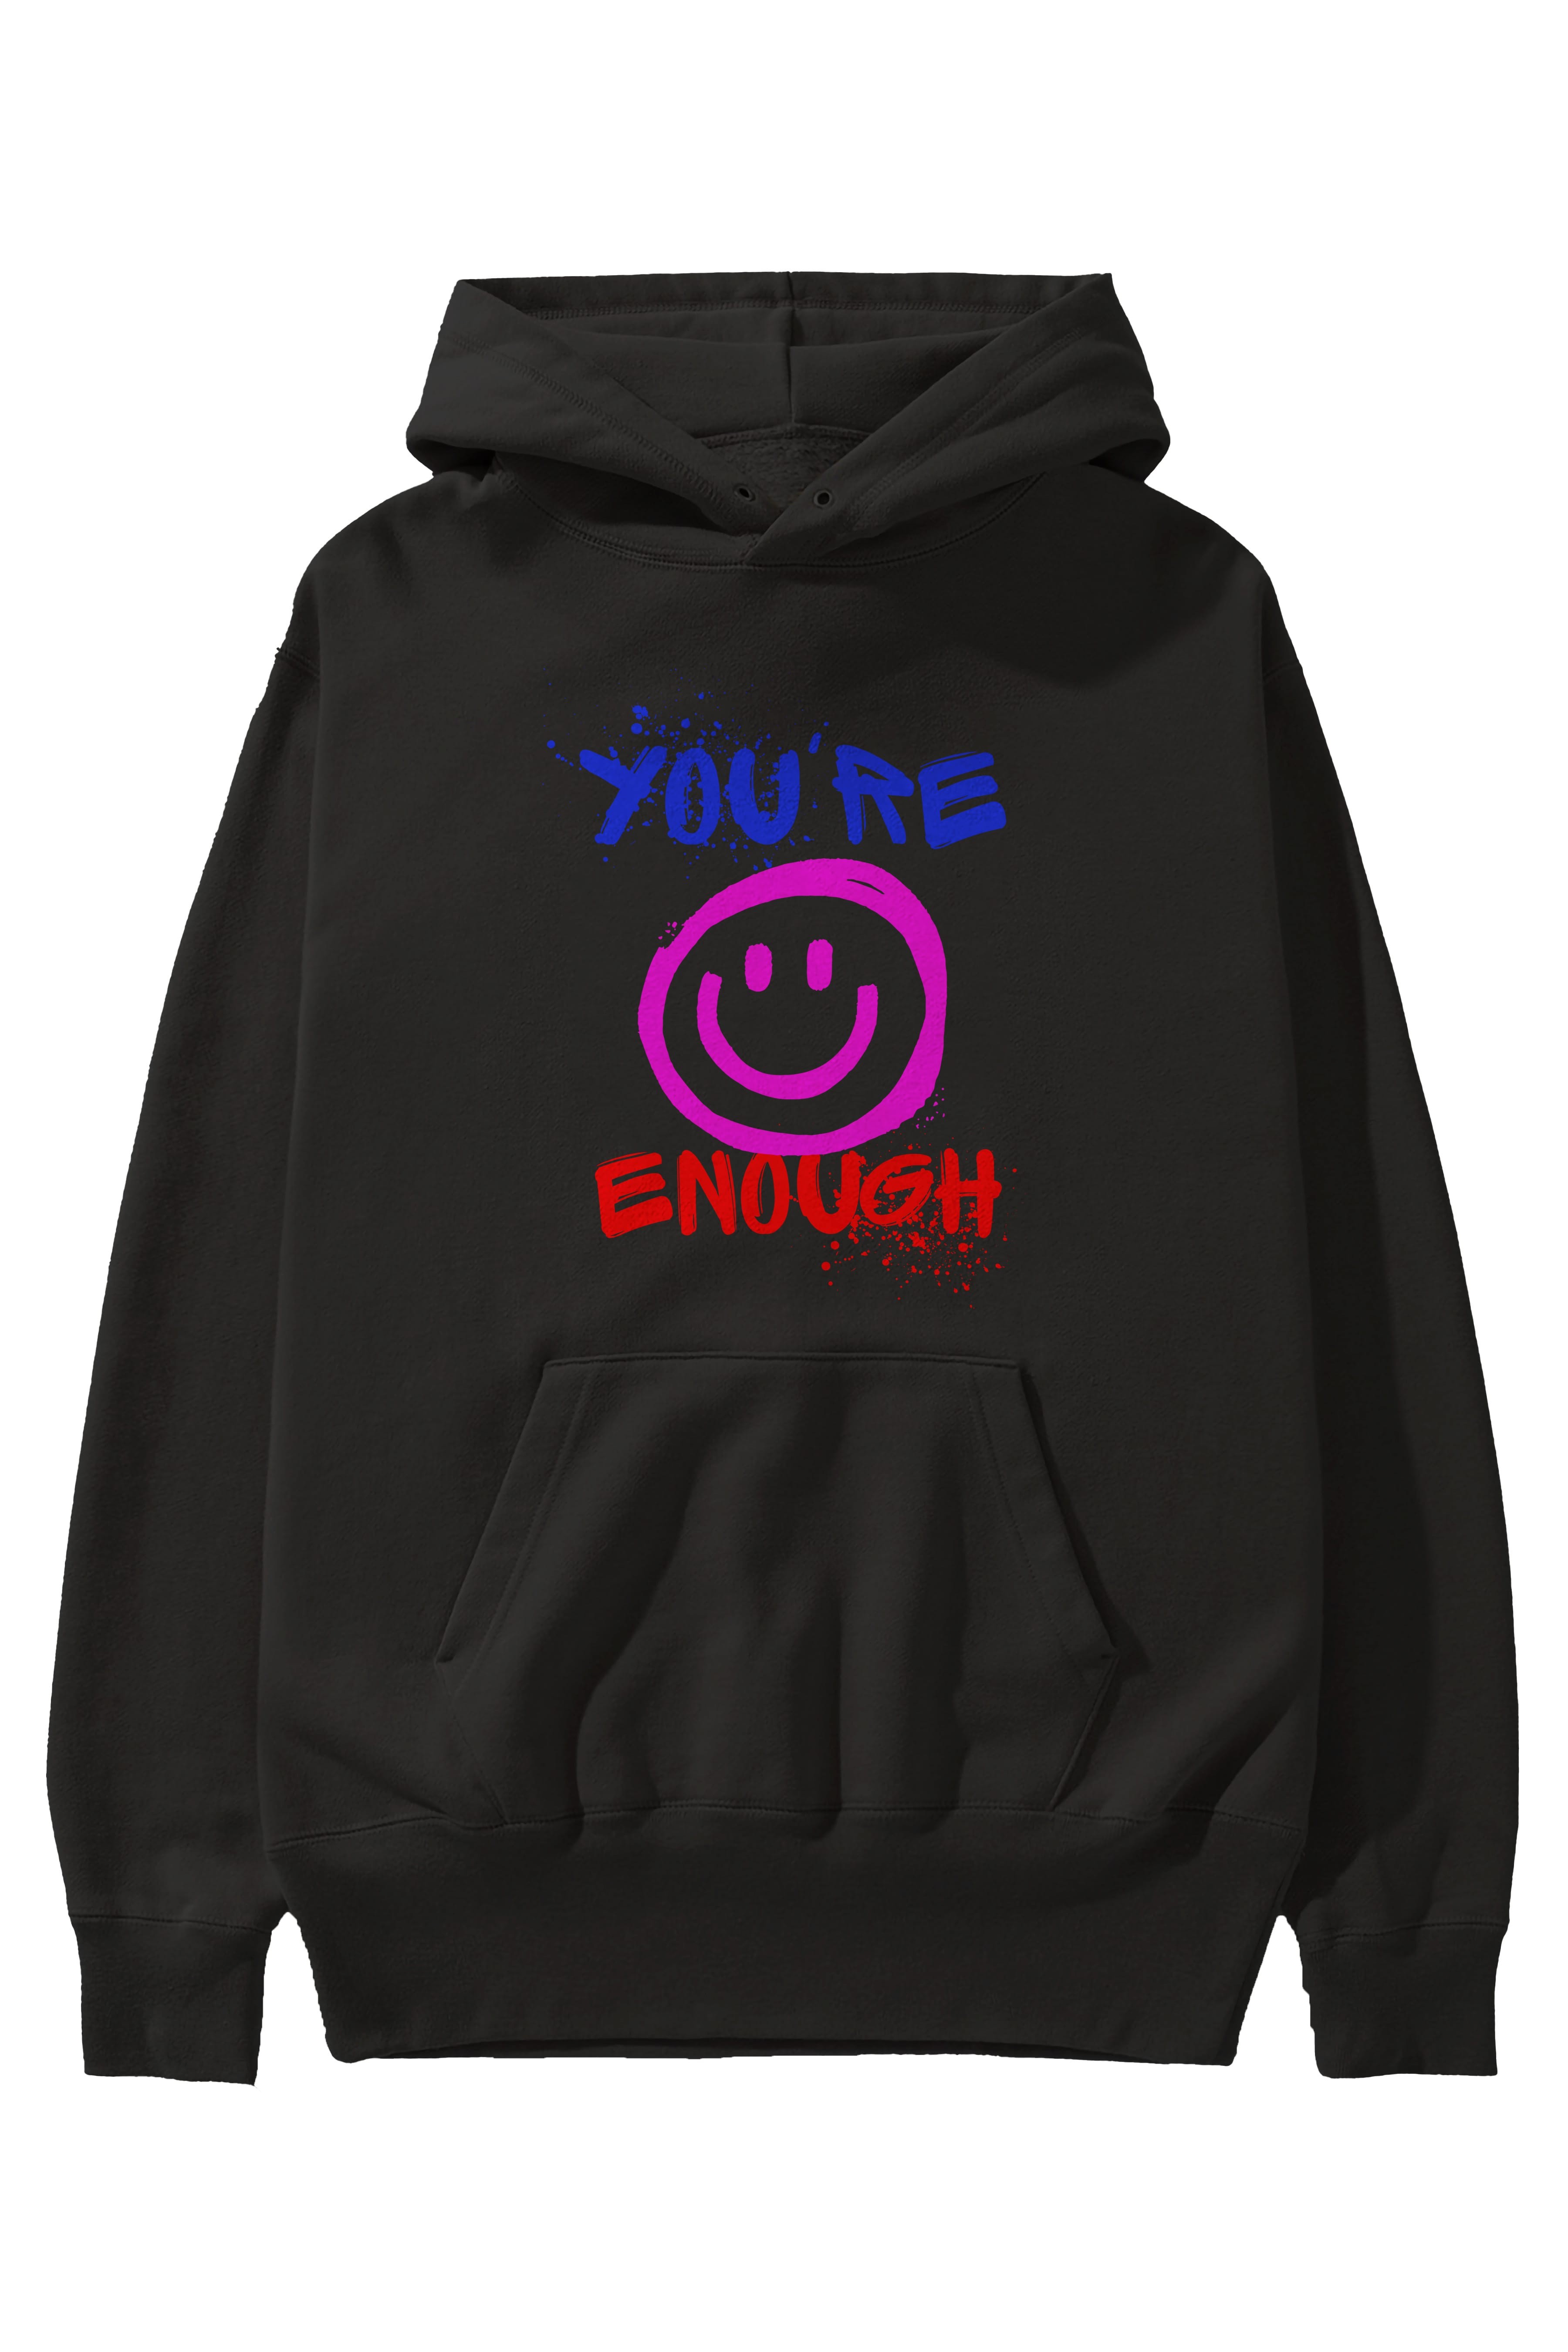 You Are Enough Yazılı Ön Baskılı Oversize Hoodie Kapüşonlu Sweatshirt Erkek Kadın Unisex